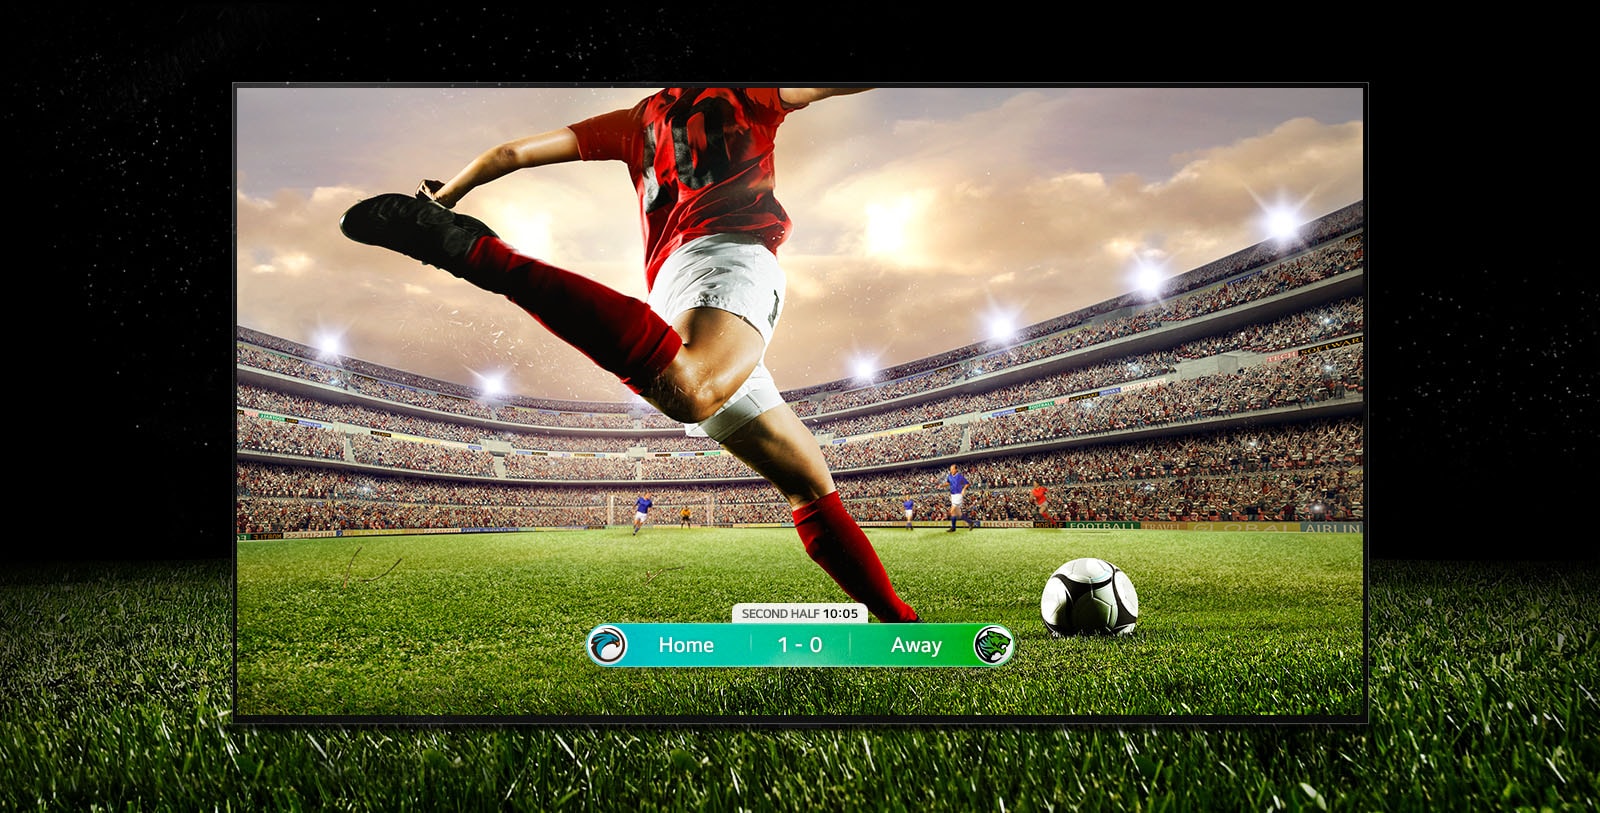 Immagine del display che mostra una partita di calcio con un giocatore a strisce rosse che sta per lanciare la palla attraverso lo stadio.  Il punteggio della partita è visibile nella parte inferiore dello schermo.  L'erba verde del campo si estende oltre lo schermo sullo sfondo nero.